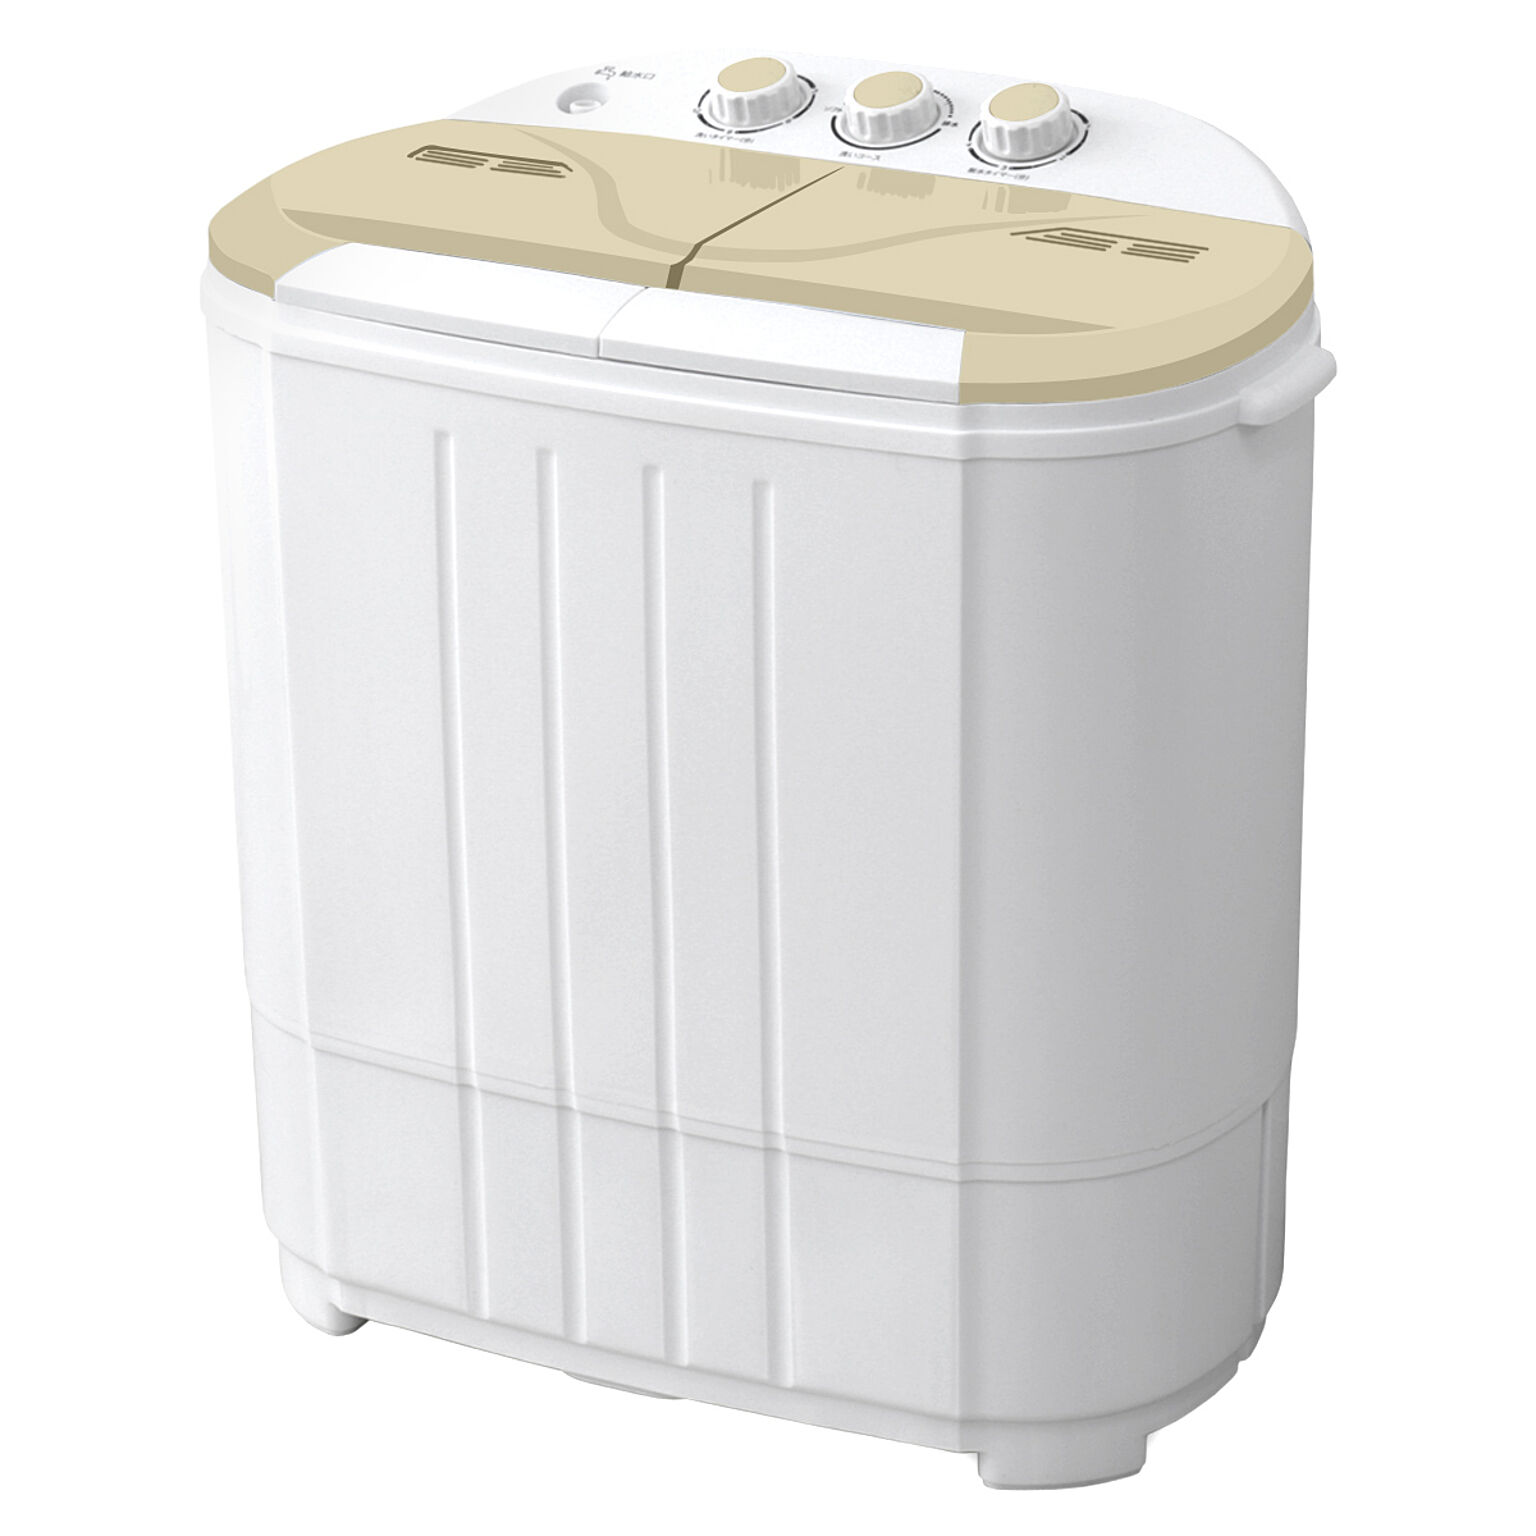 小型洗濯機 ミニ洗濯機 二層式洗濯機【1年保証】